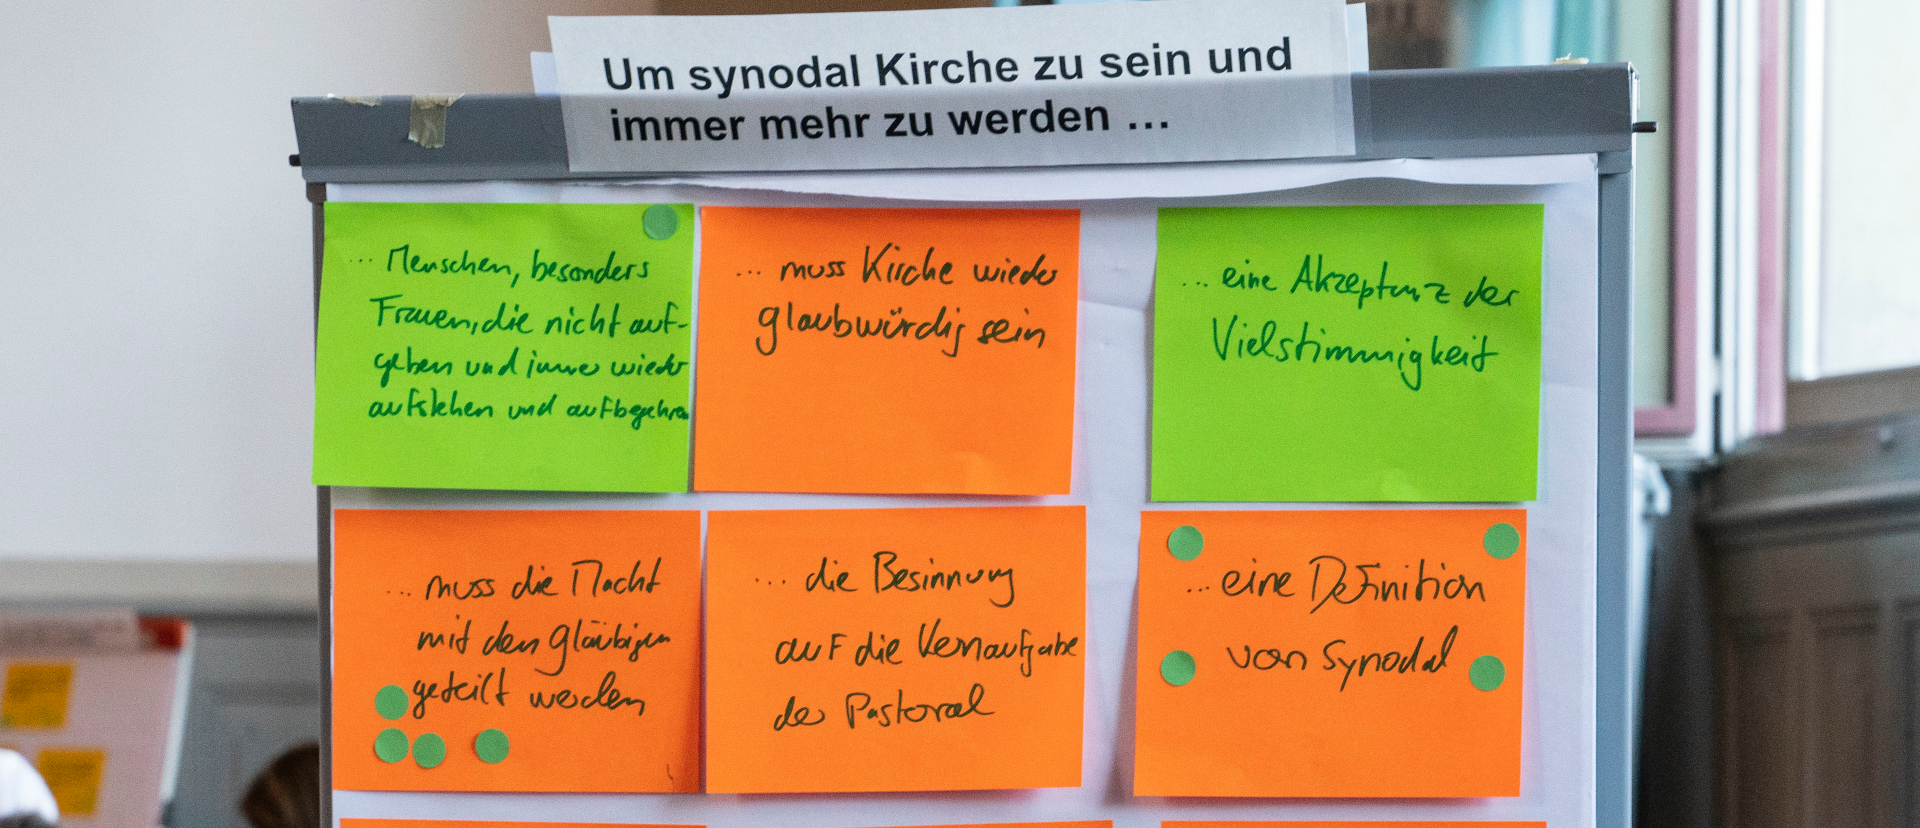 Brainstorming zur Synodalität beim RKZ-Fokus in Bern.